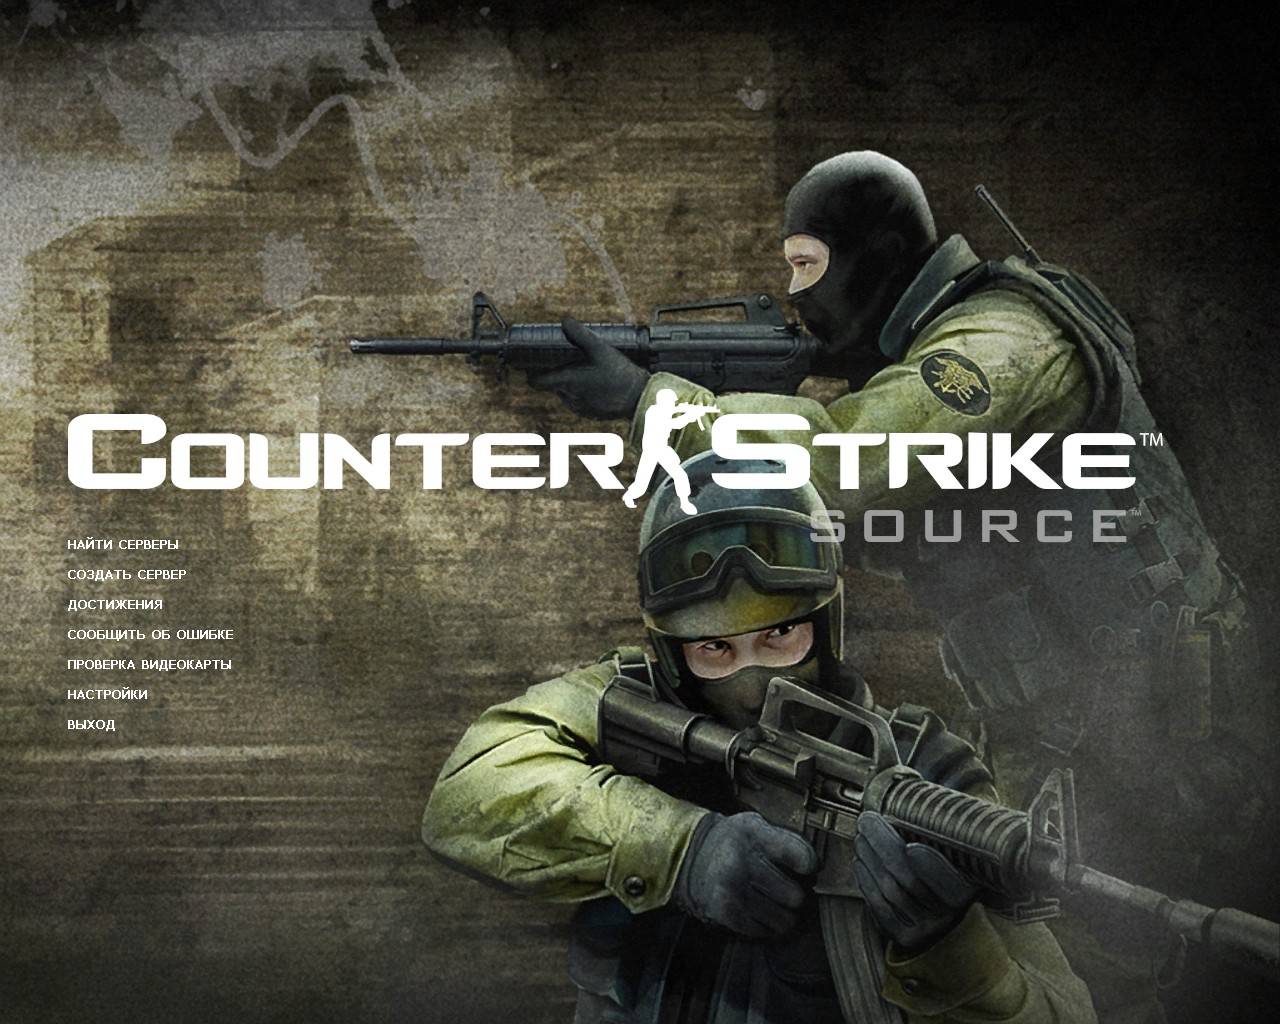 Скачать Скачать Counter-Strike: Source v44 [No-Steam] torrent / PC (Новая cs:source) Обвноления для Counter Strike Source   Orang Box 